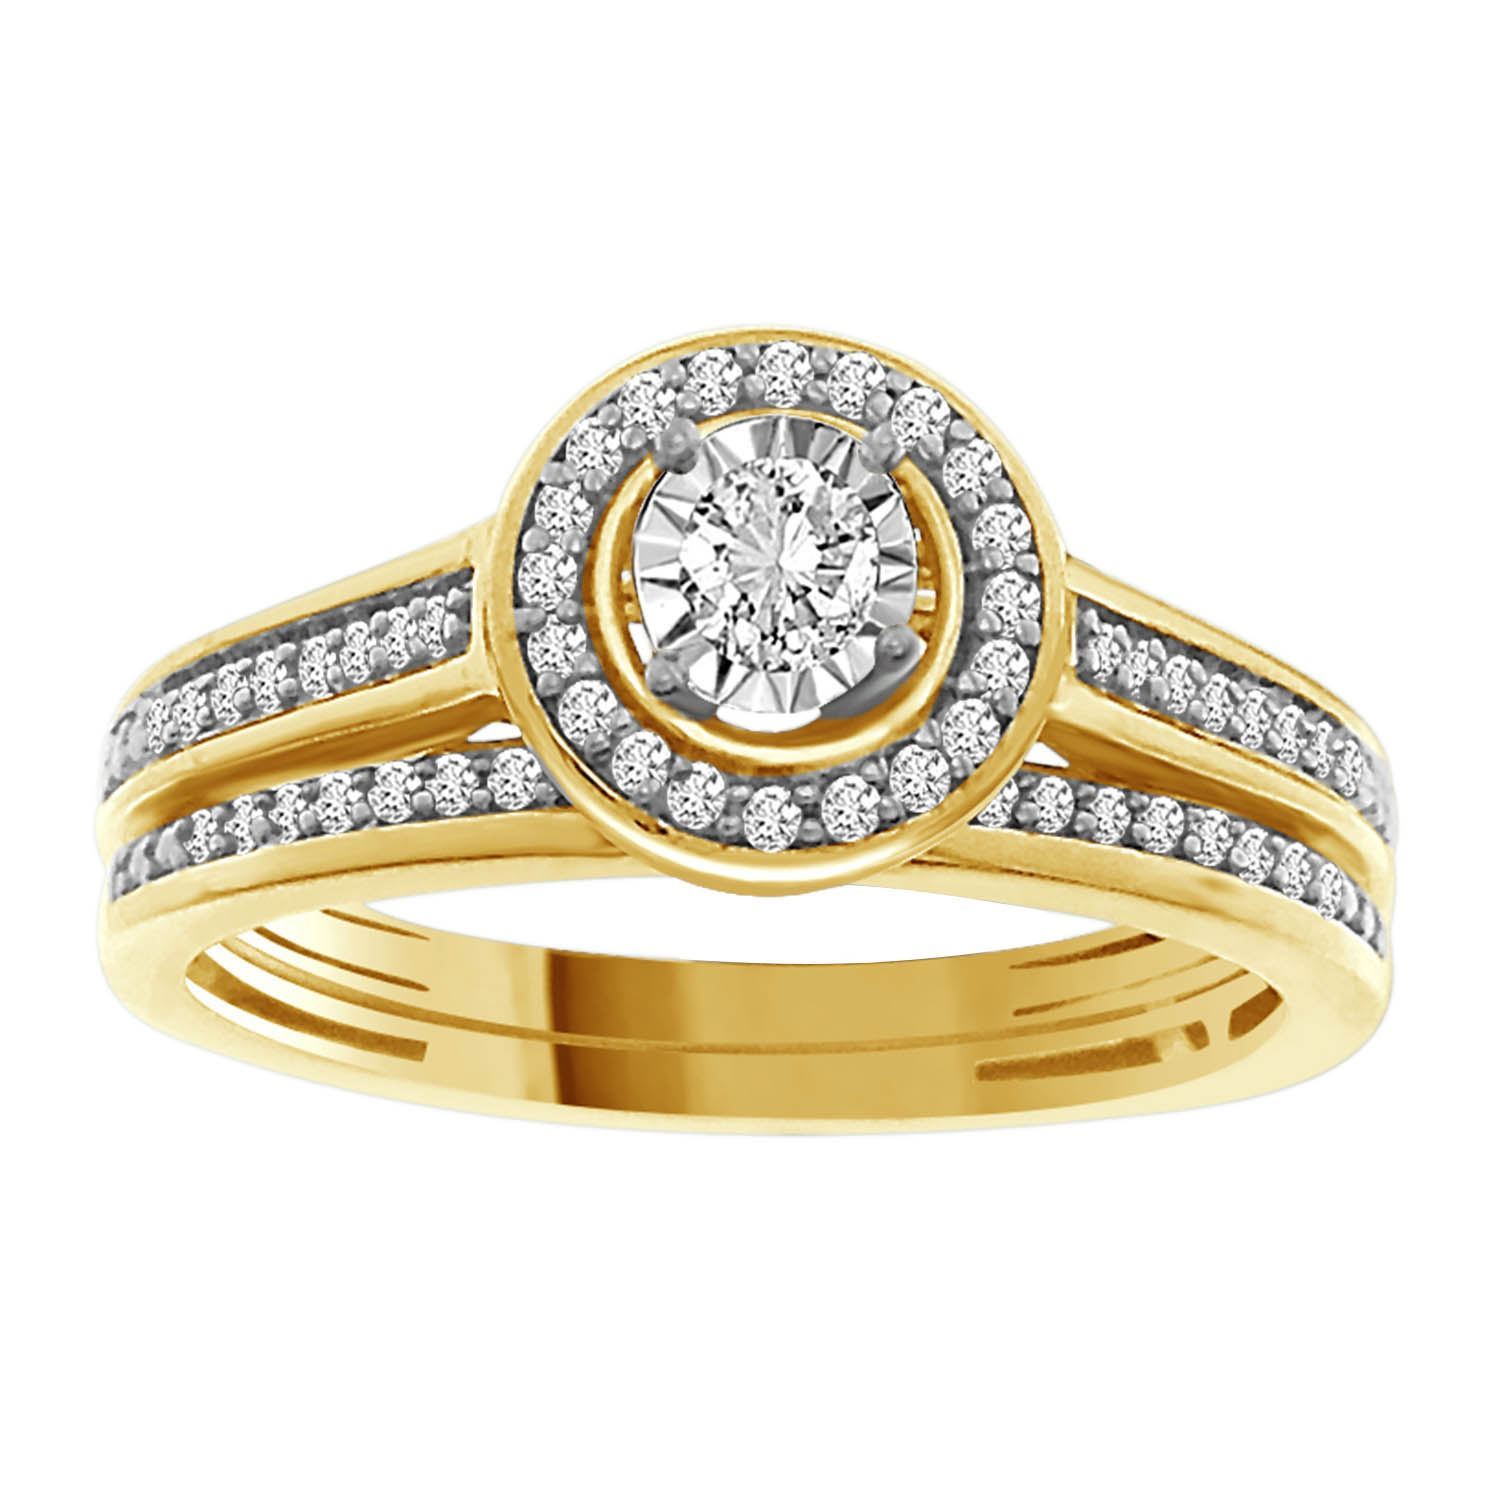 0006067_ladies-bridal-ring-set-14-ct-round-diamond-14k-yellow-gold.jpeg